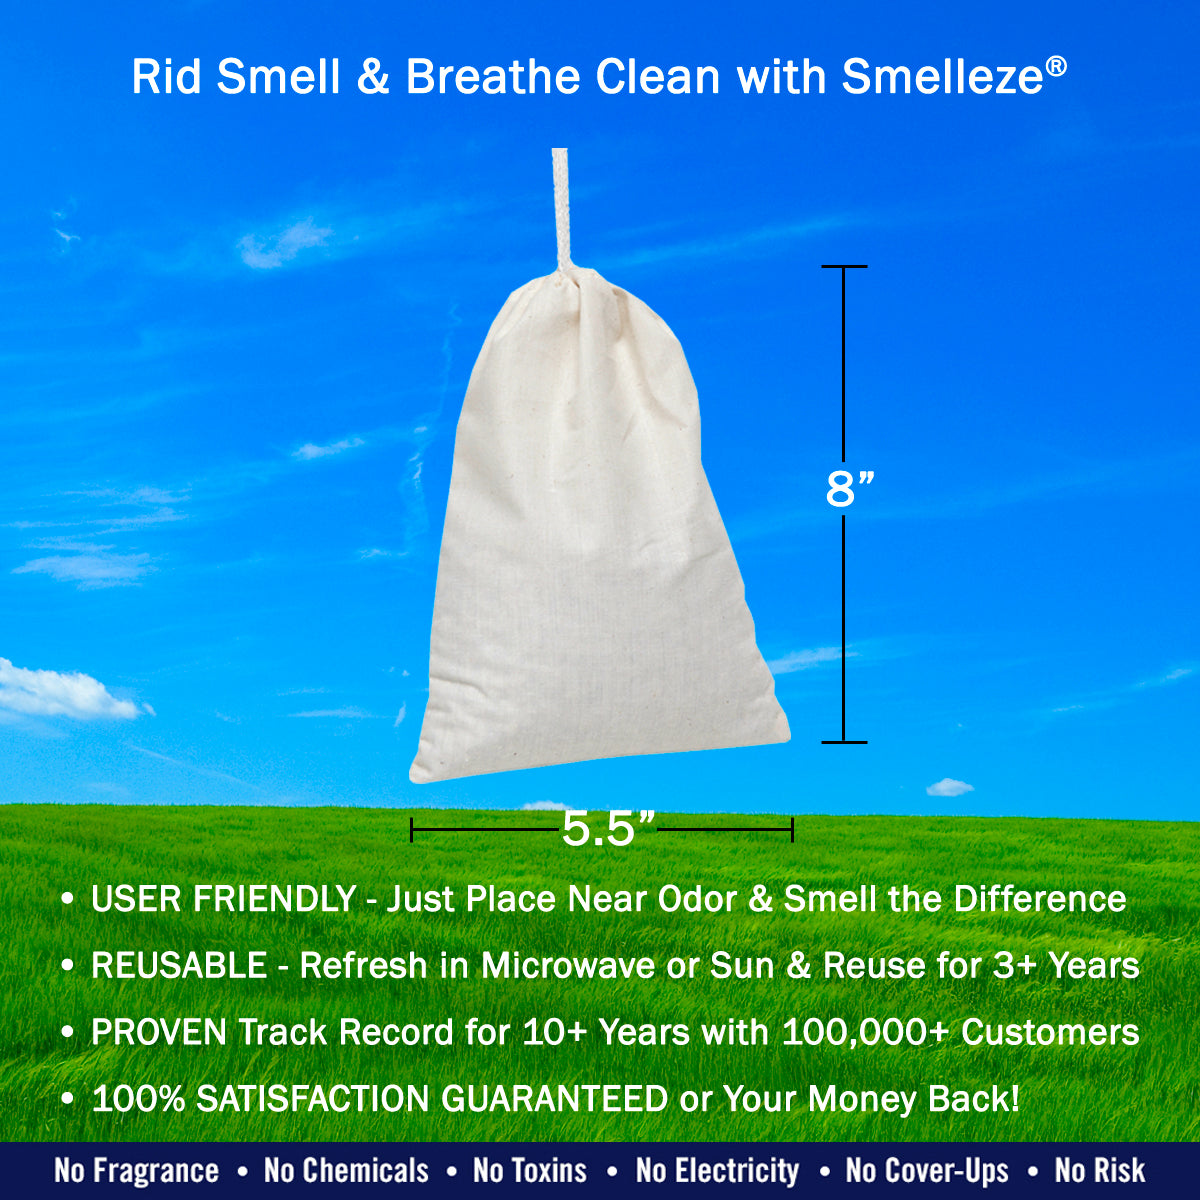  Flatulence Deodorizer Pads, Fart Odor Eliminator, 8